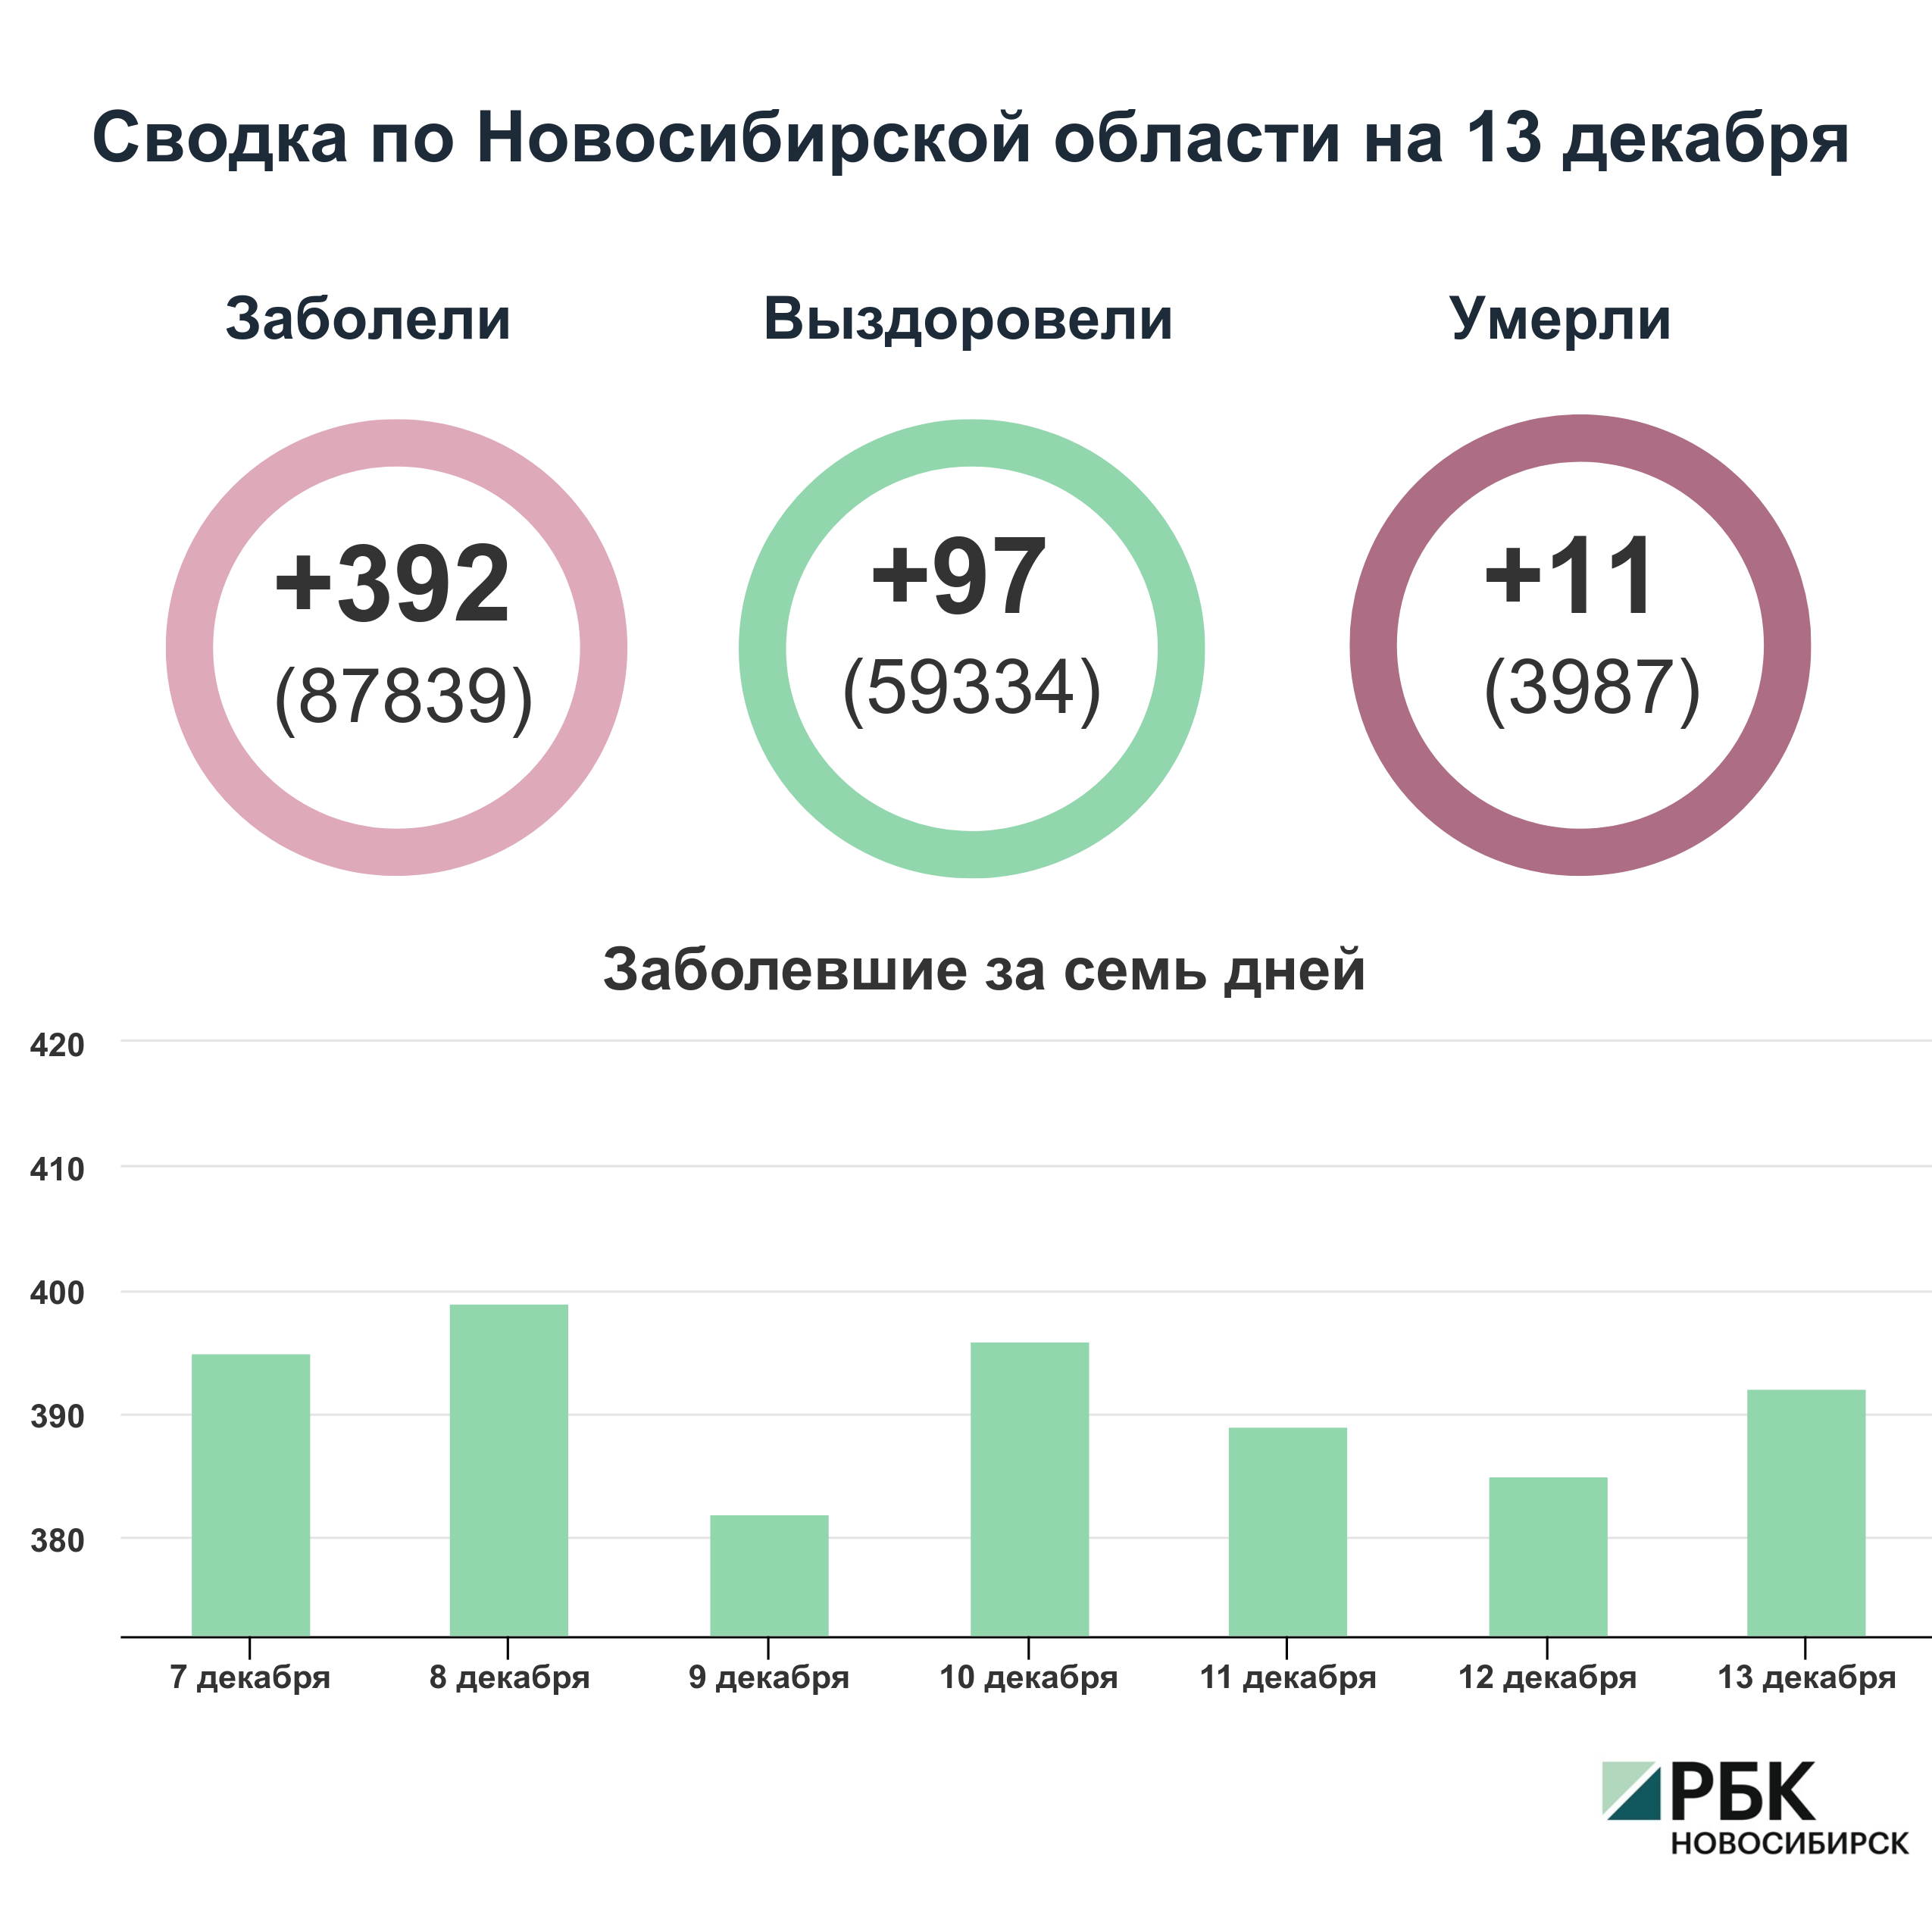 Коронавирус в Новосибирске: сводка на 13 декабря